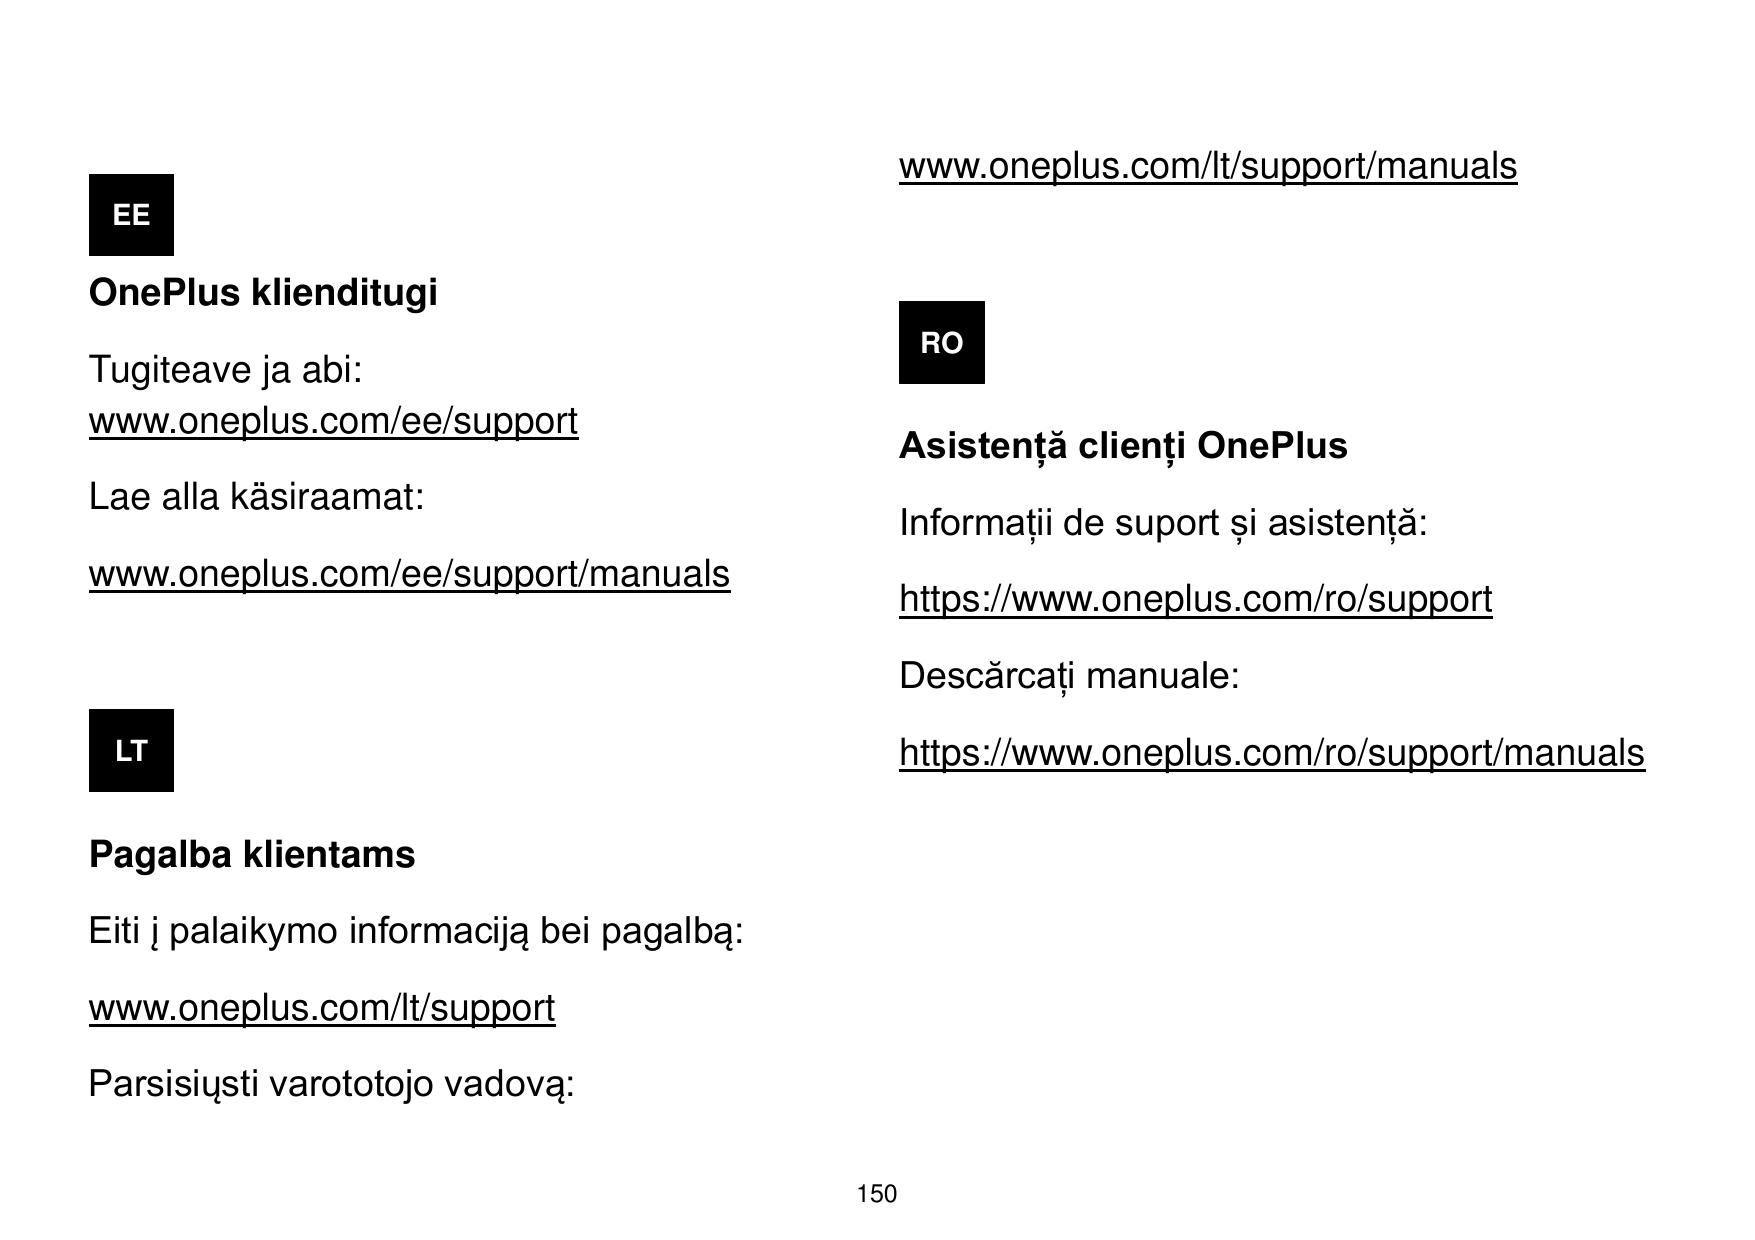 www.oneplus.com/lt/support/manualsEEOnePlus klienditugiROTugiteave ja abi:www.oneplus.com/ee/supportAsistență clienți OnePlusLae